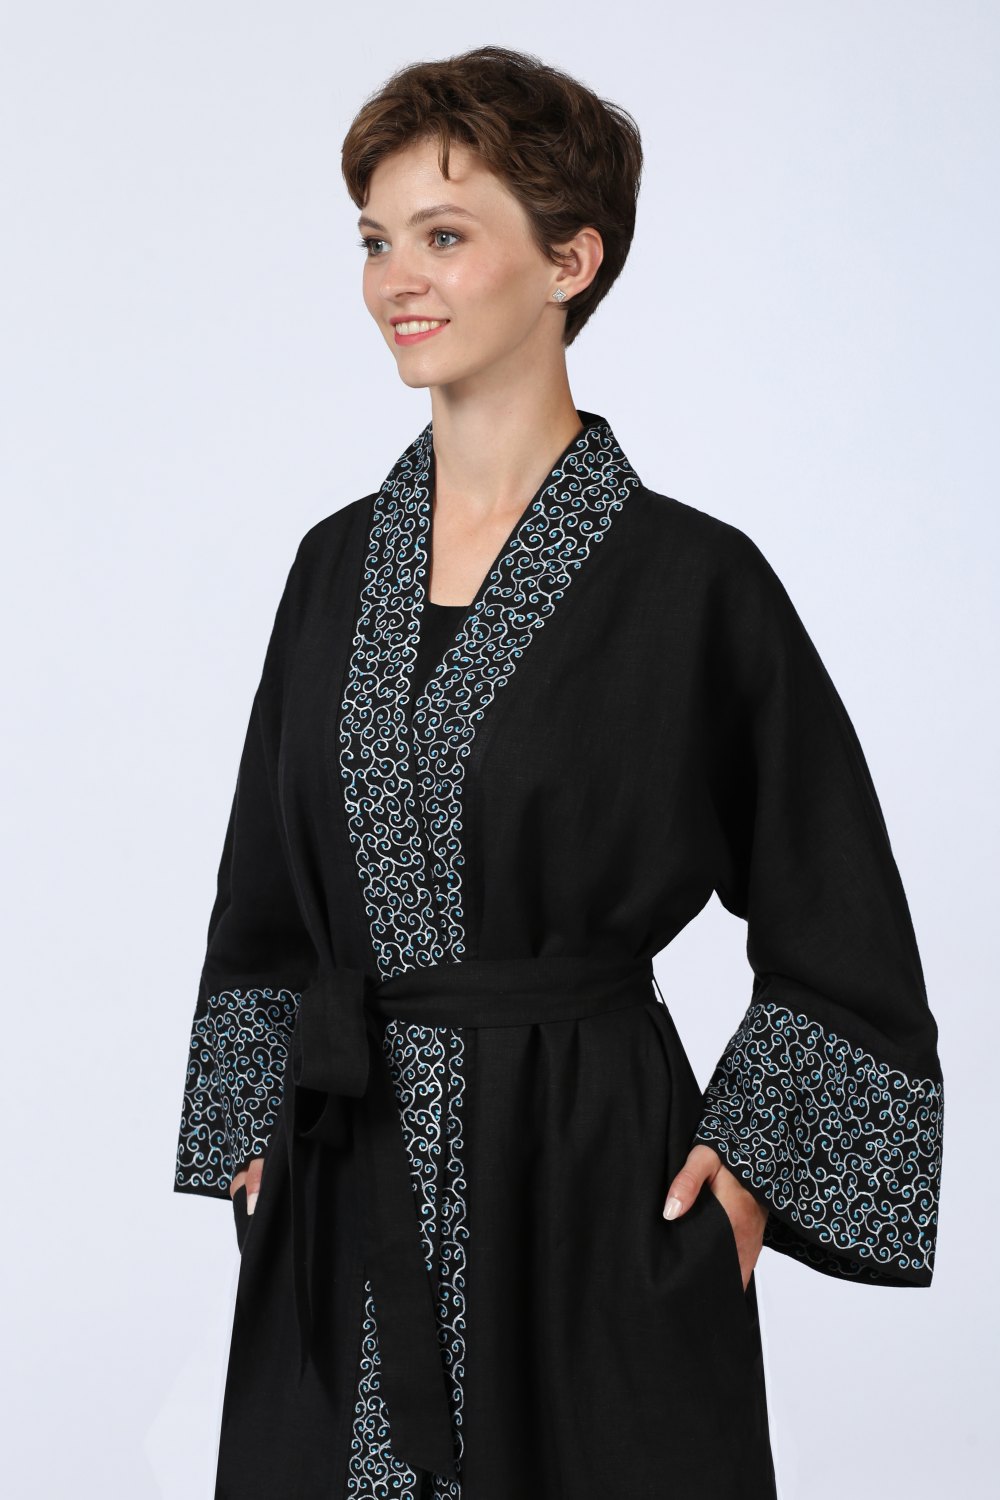 Кардиган женский Кимоно модель 782/1 цвет: черный